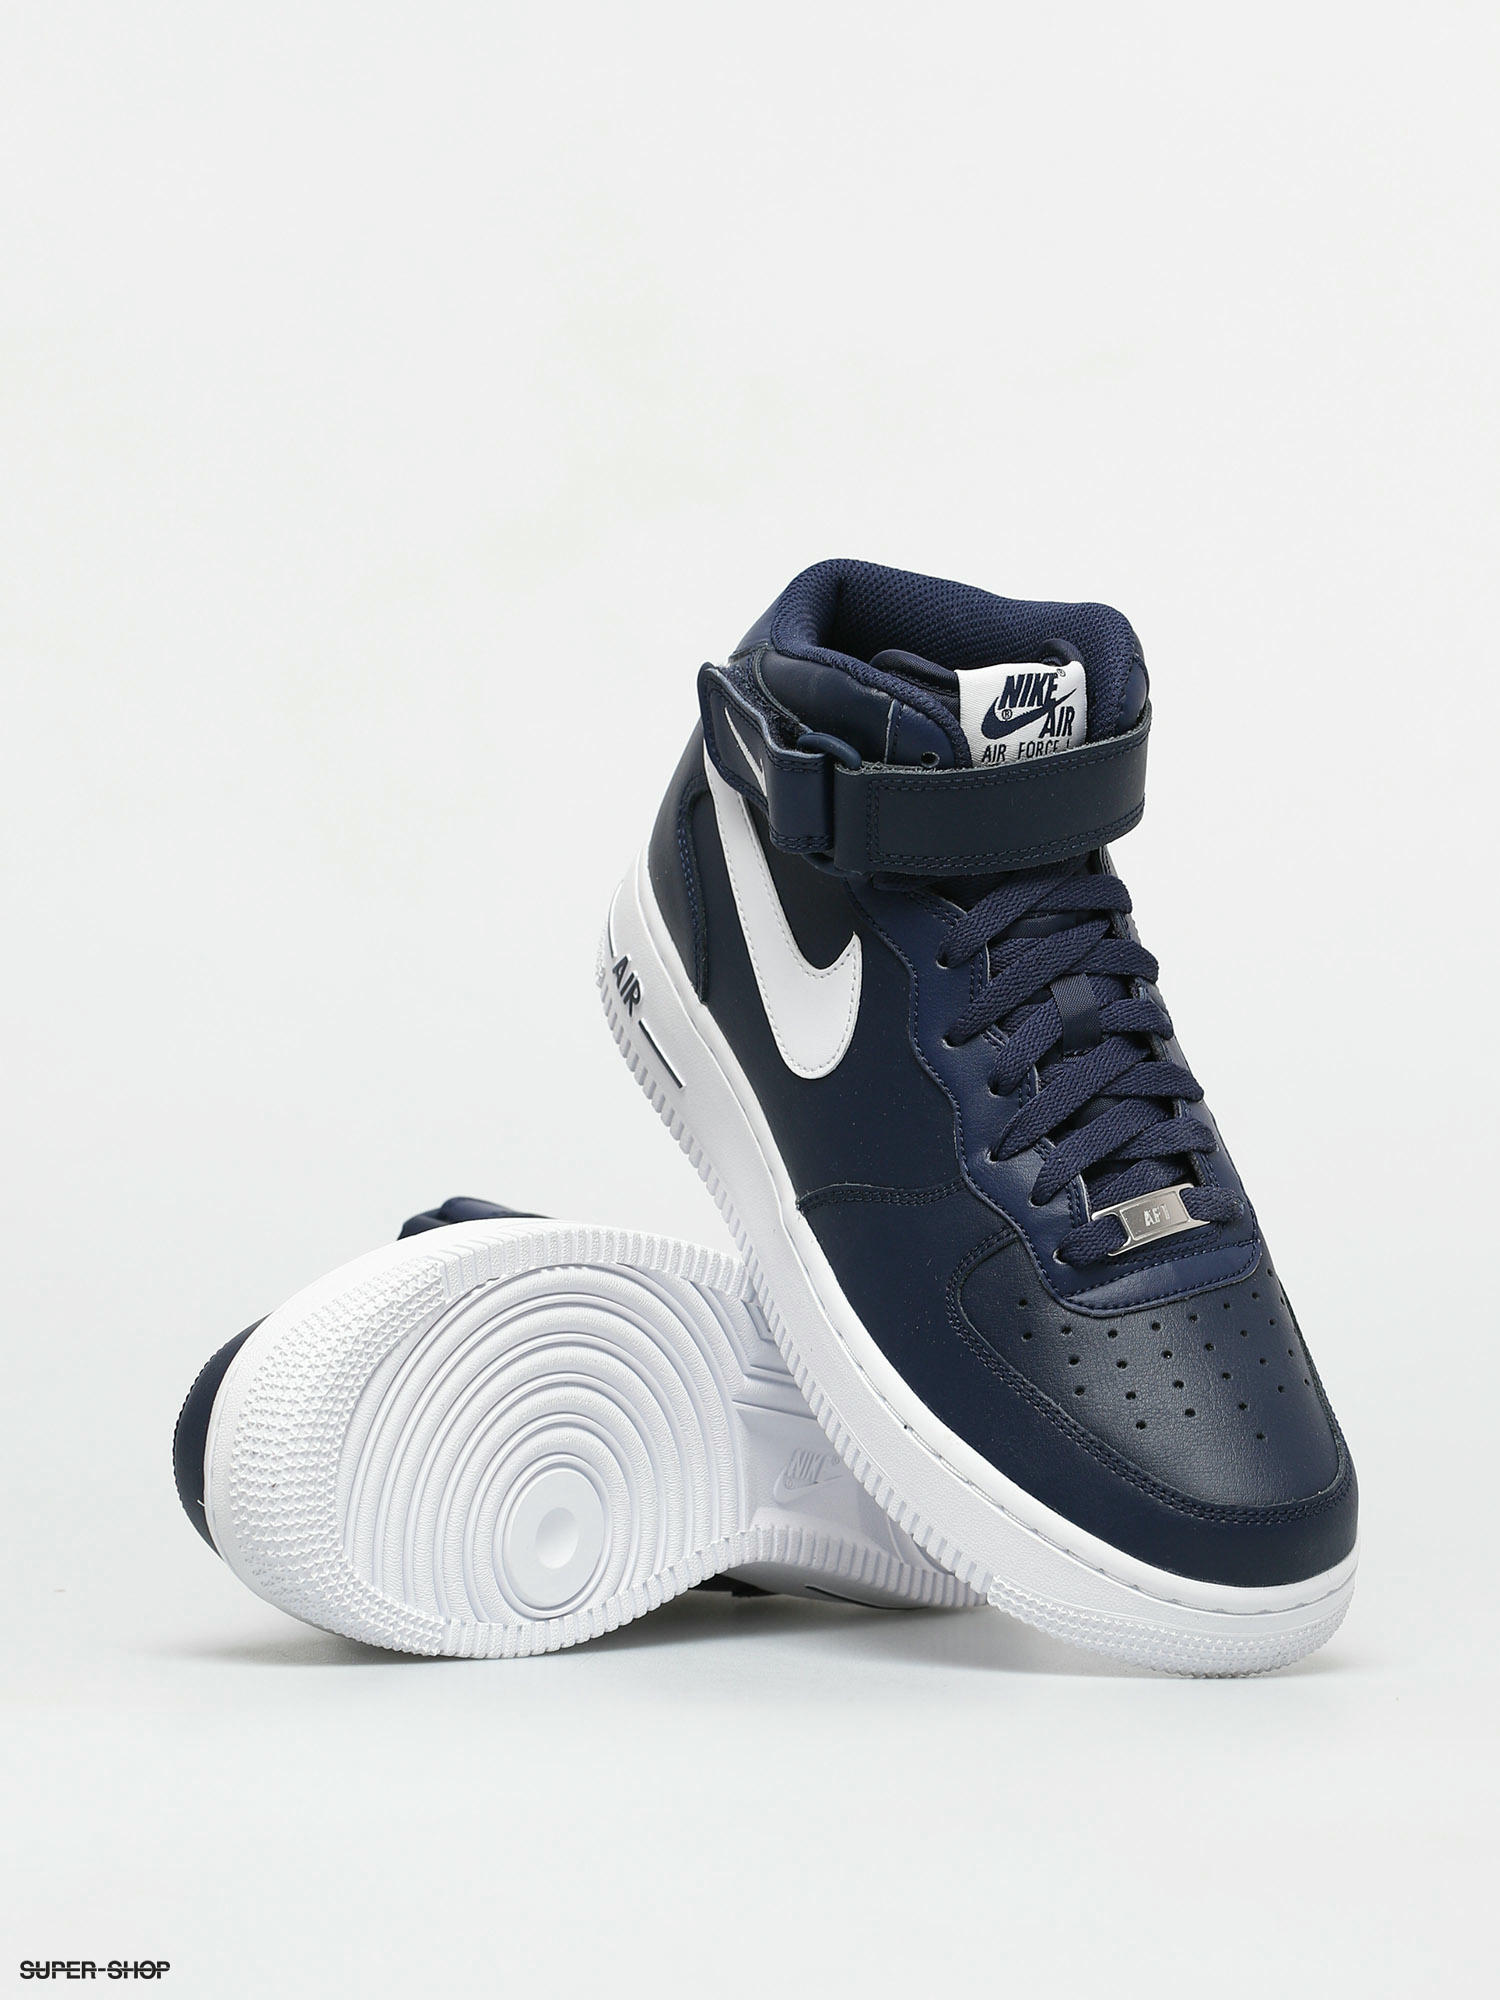 Dialoog In werkelijkheid Fahrenheit Nike Air Force 1 Mid 07 Shoes (midnight navy/white)